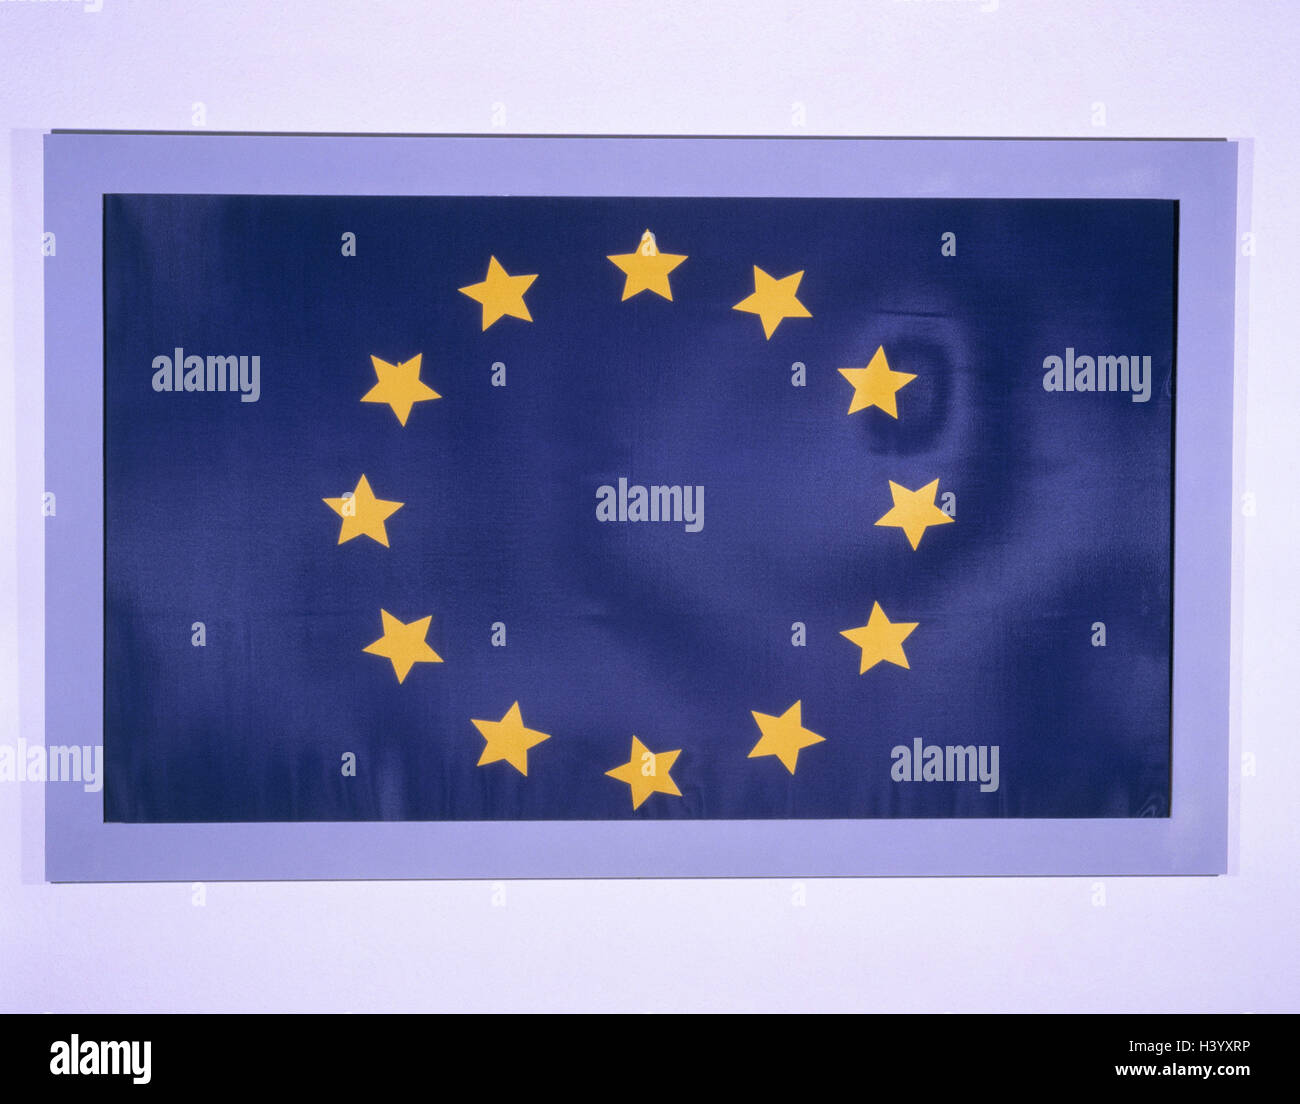 Drapeau européen, bleu-jaune, drapeau, drapeau, l'Europe, l'Union européenne, drapeau de l'UE, les étoiles, l'icône, 12 pays membres, membres, douze, Union européenne, Communauté européenne, photographie de produits, still life Banque D'Images